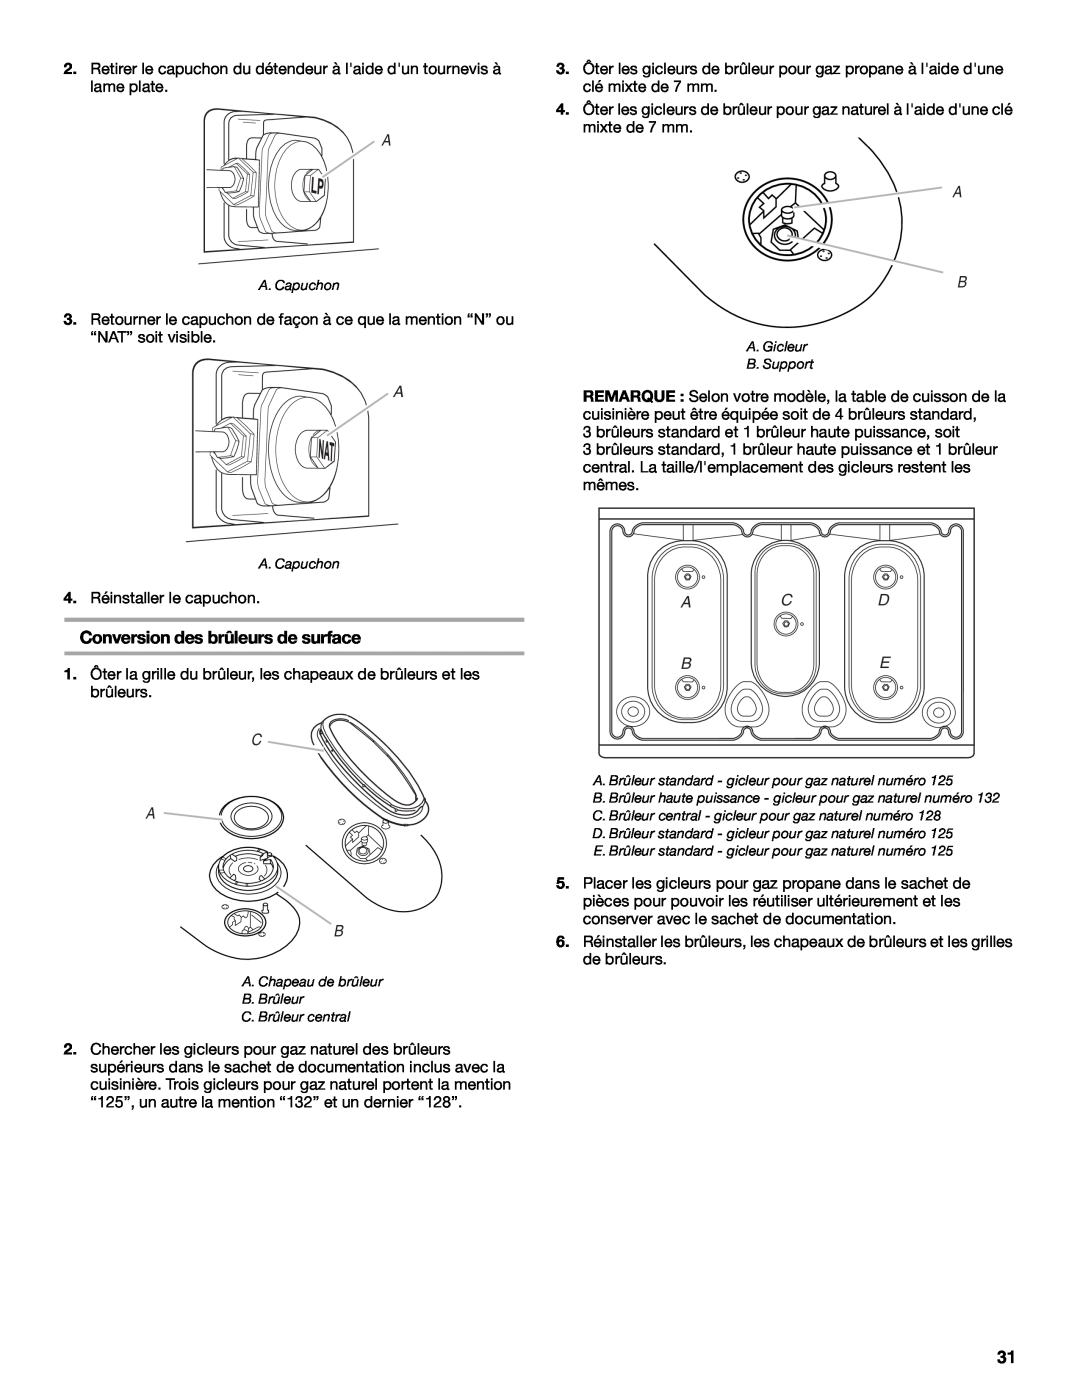 Whirlpool W10200946A installation instructions Conversion des brûleurs de surface, C A B, A C D Be 